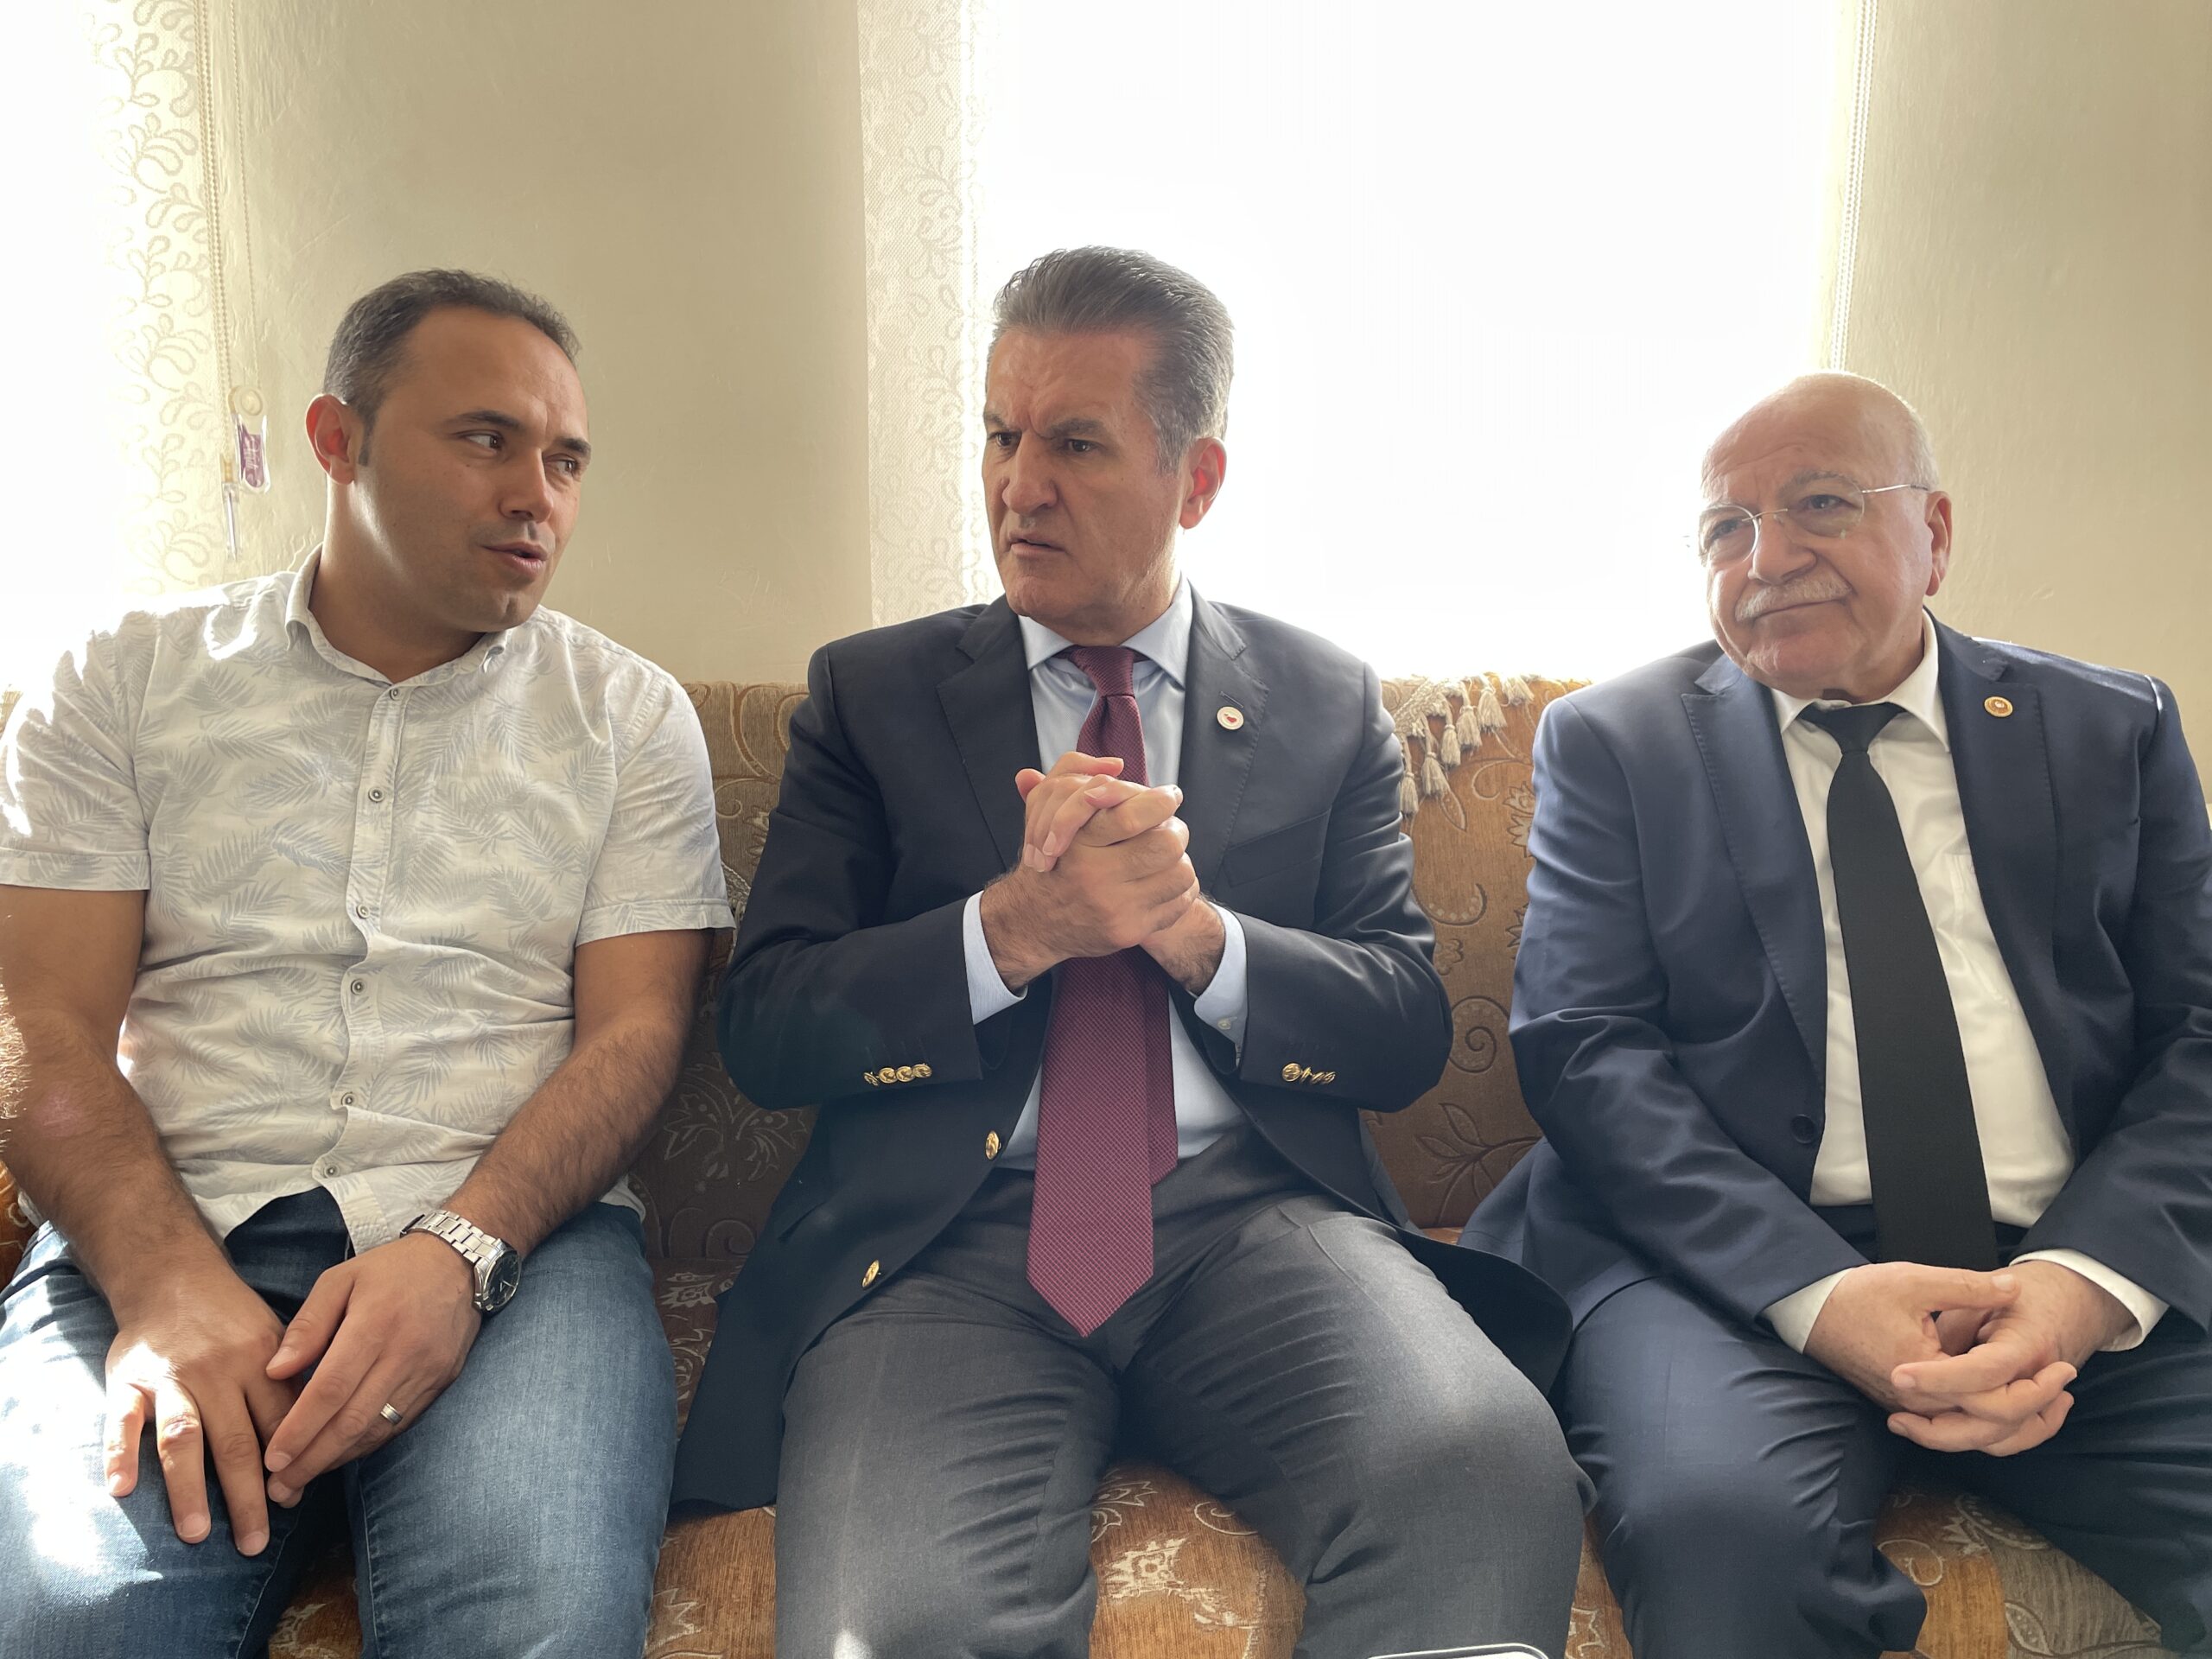 TDP Genel Başkanı Sarıgül, Amasra’daki patlamadan yaralı kurtulan madenciyi ziyaret etti